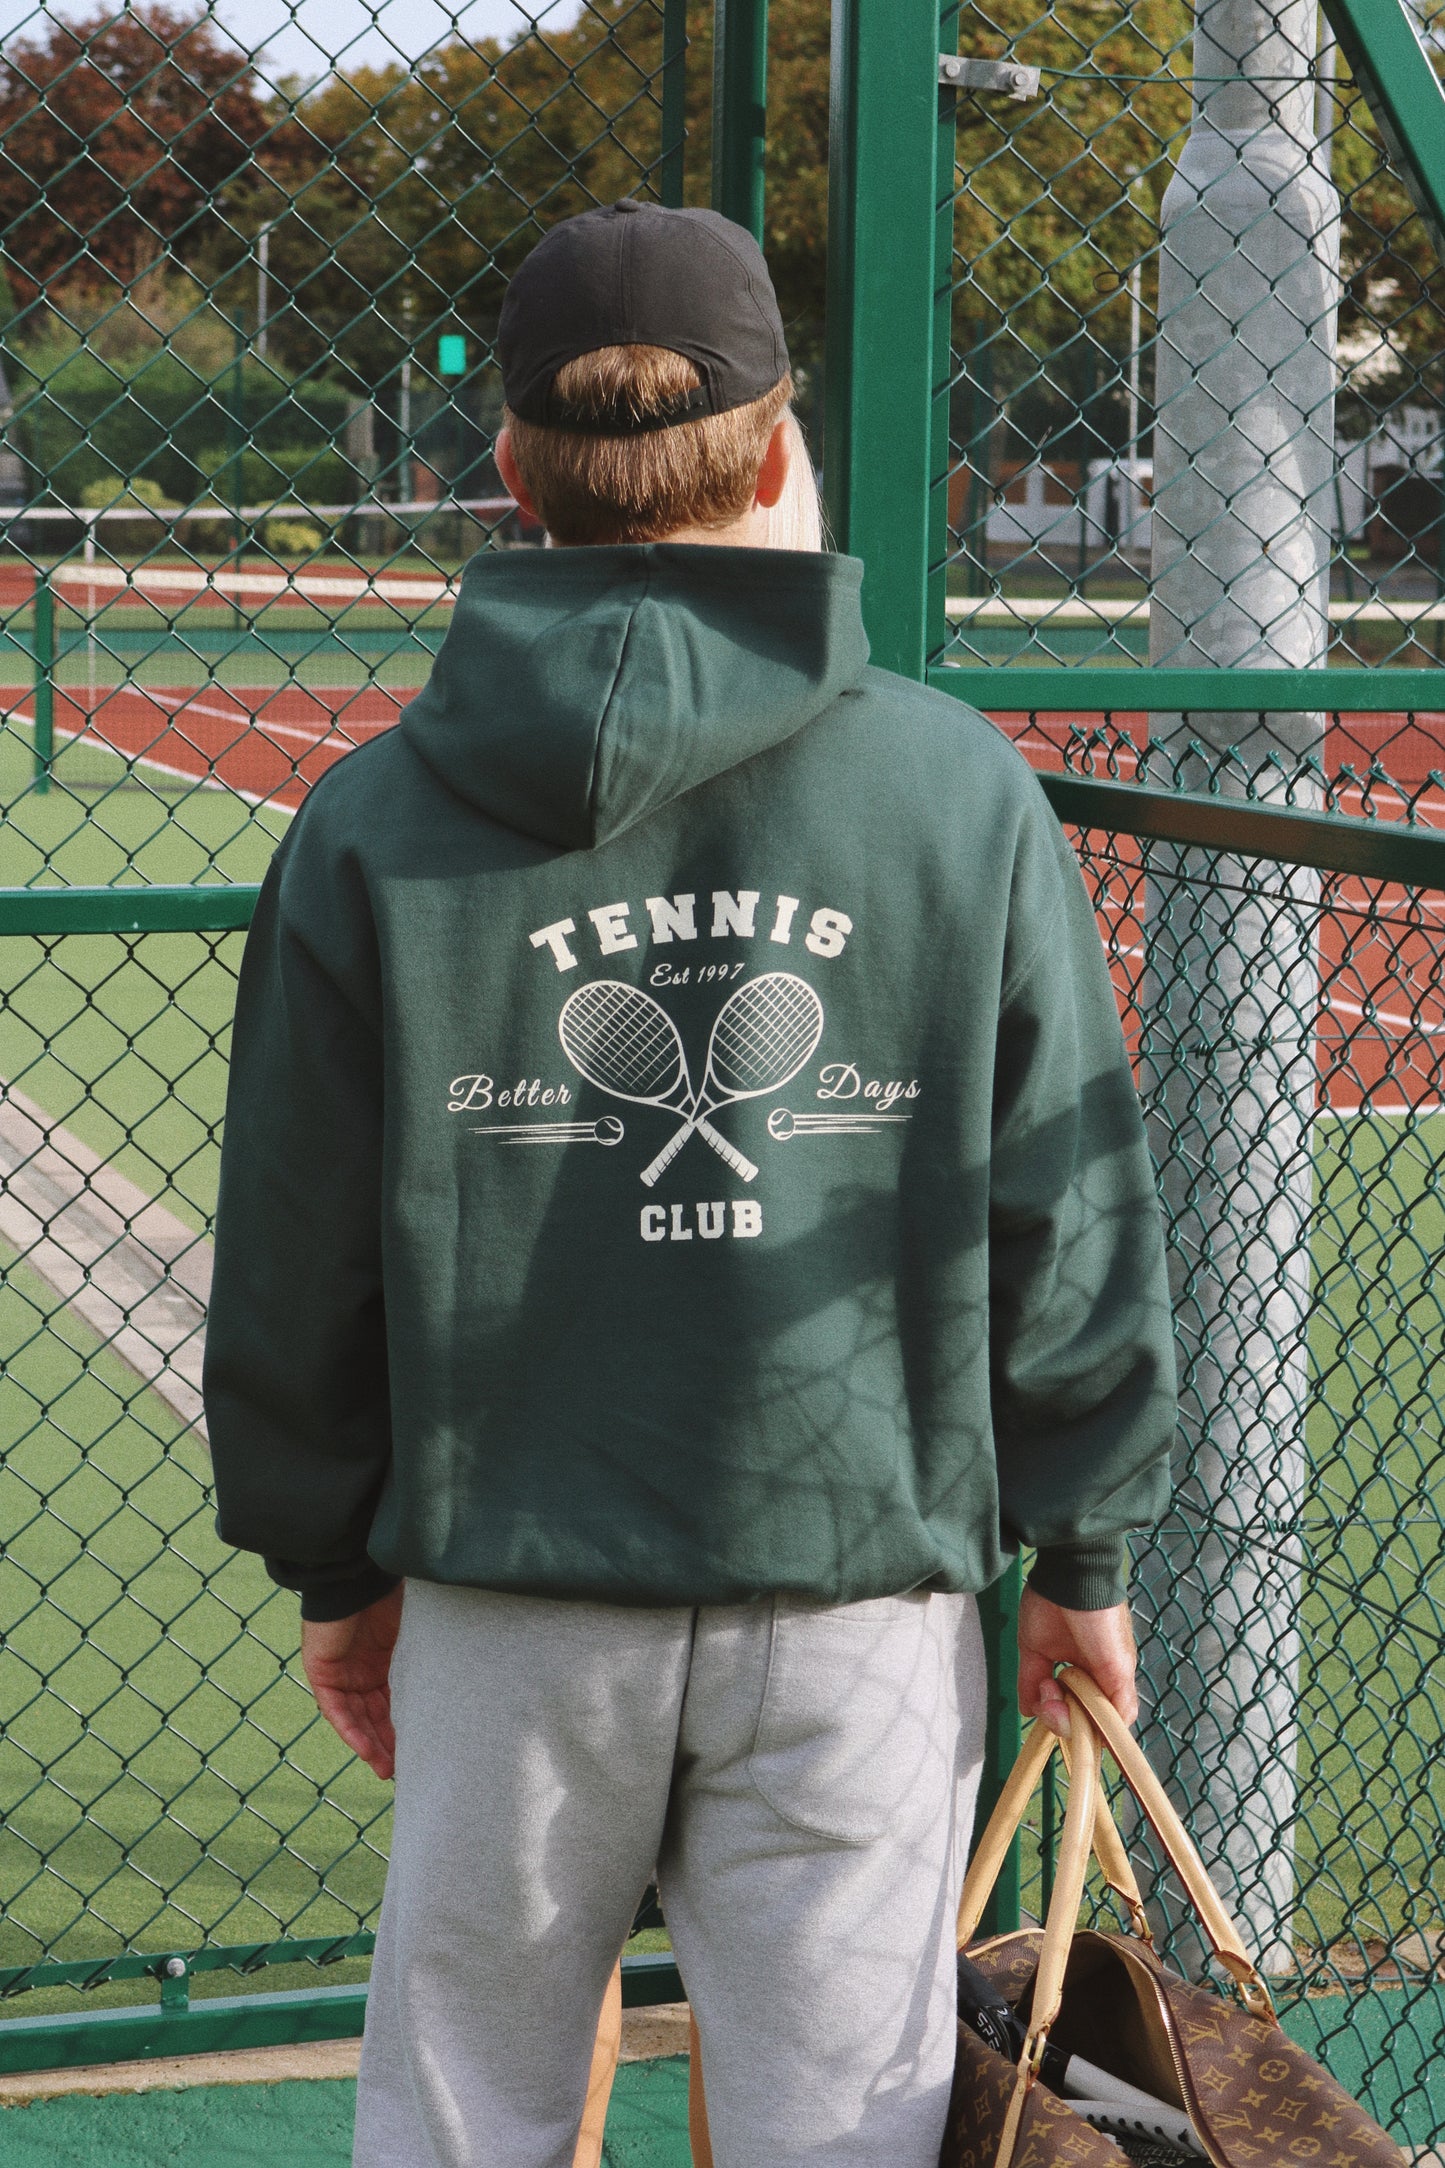 Tennis club Hoodie - Vintage Green